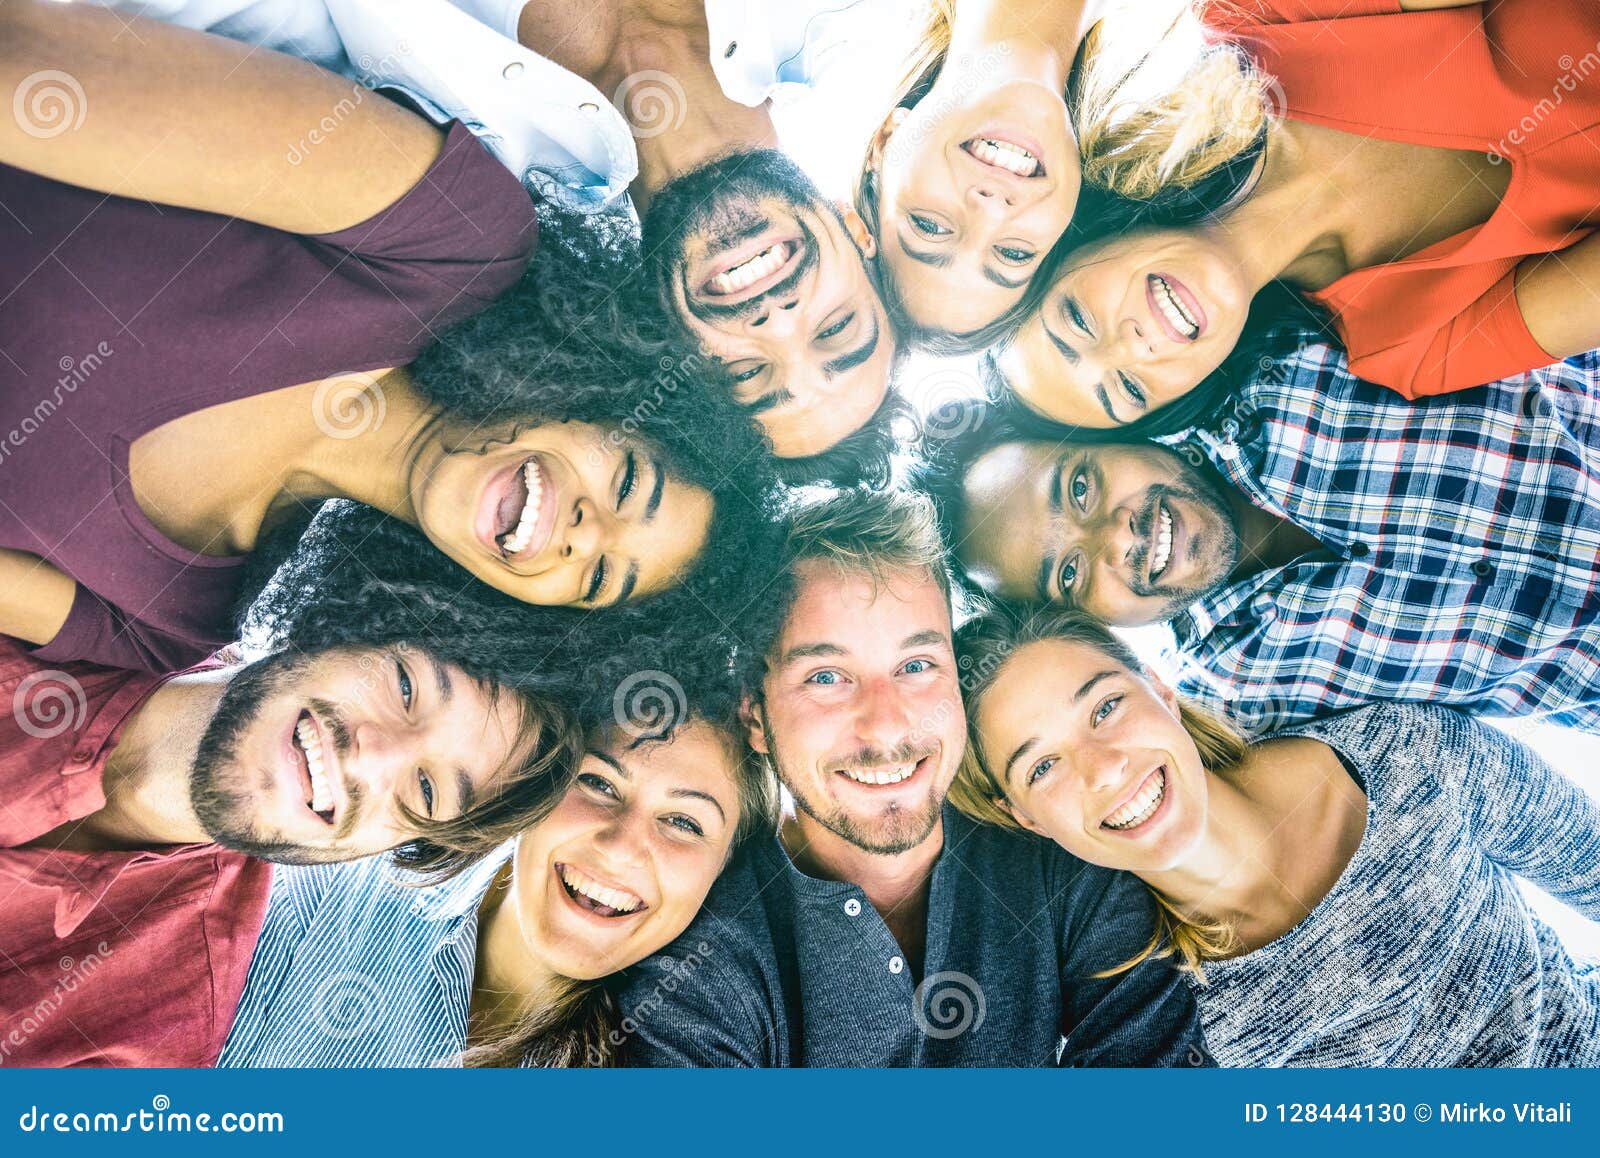 multiracial best friends millennials taking selfie outdoors